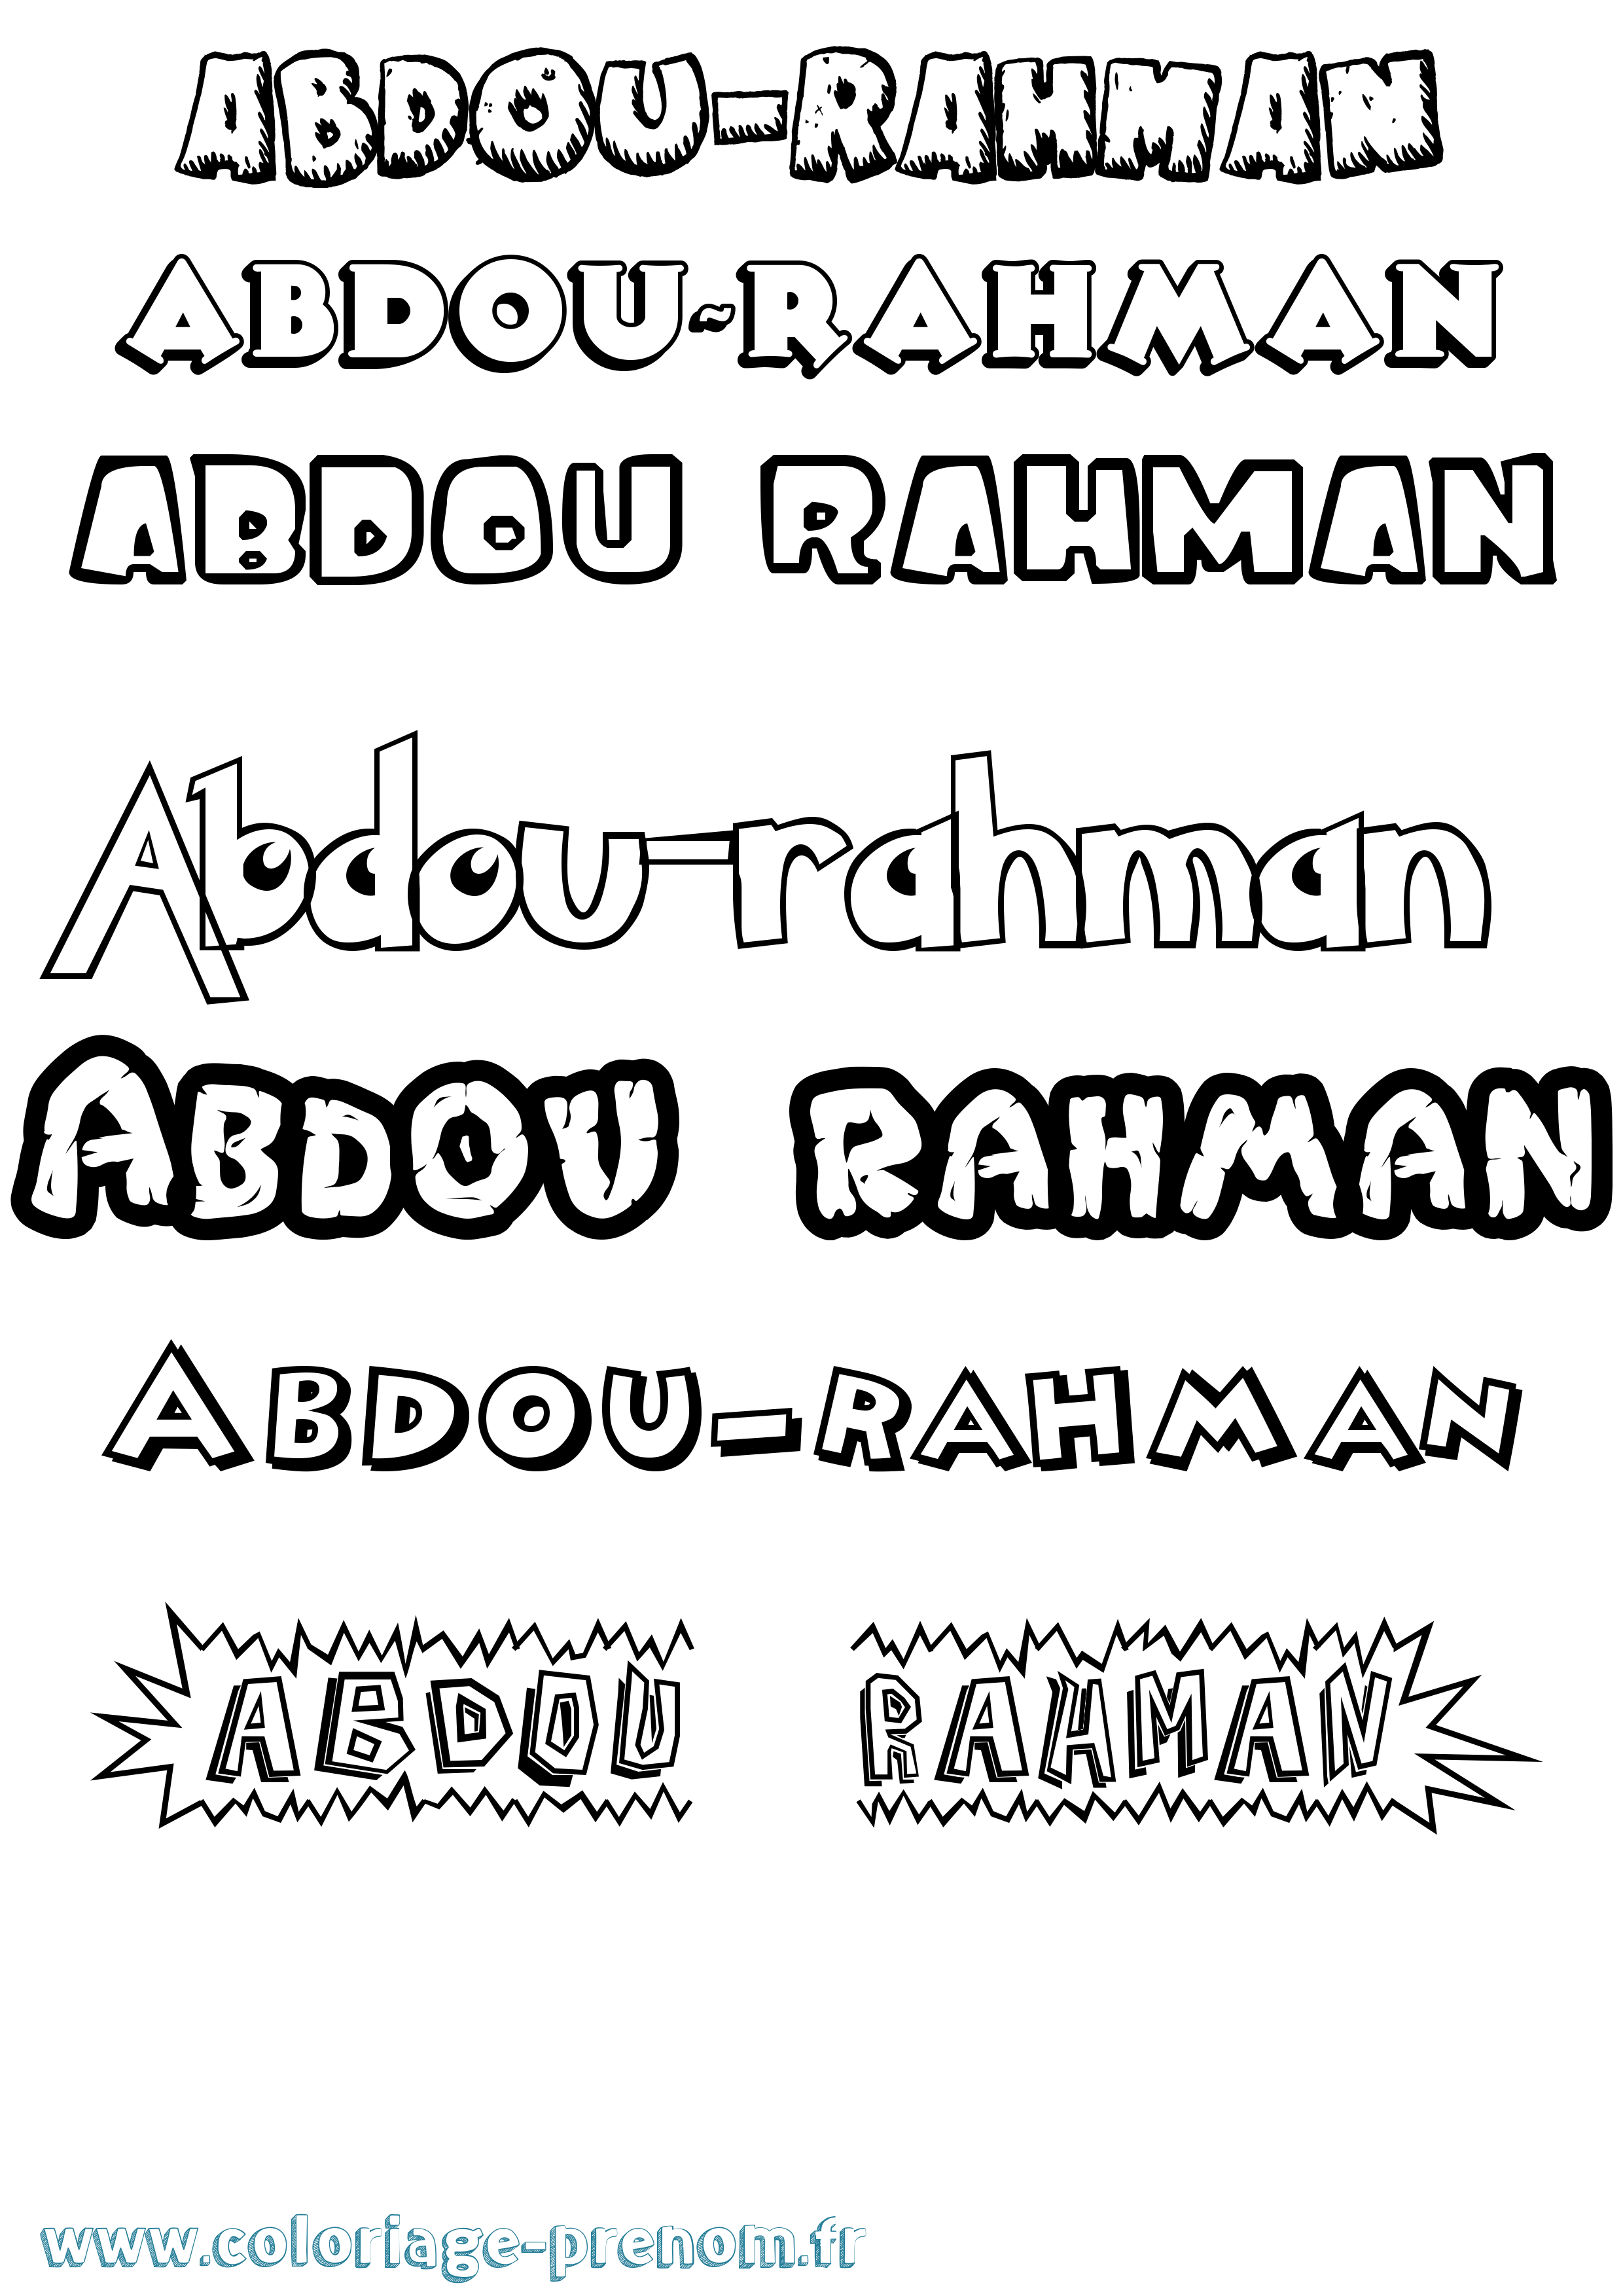 Coloriage prénom Abdou-Rahman Dessin Animé